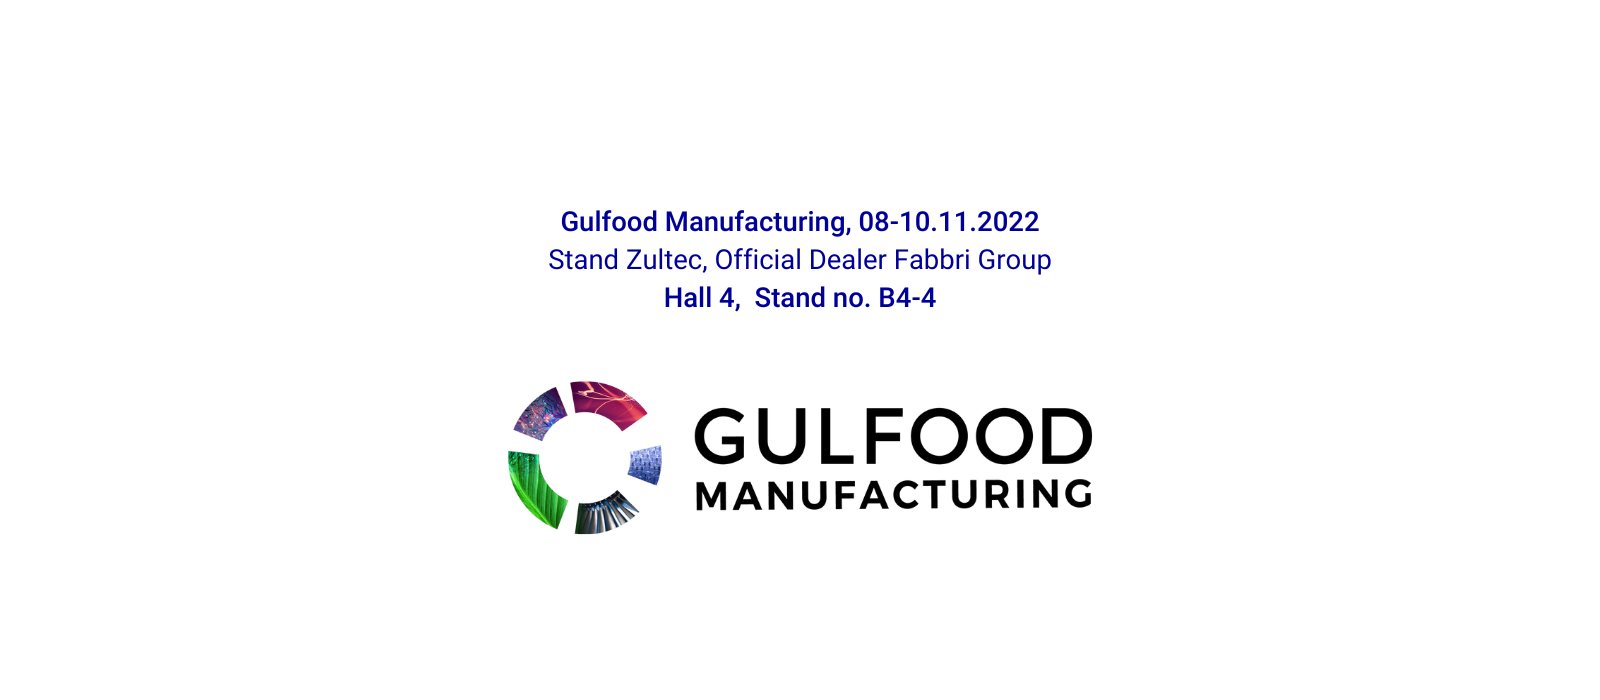 Fabbri Group à Gulfood Manufacturing 2022